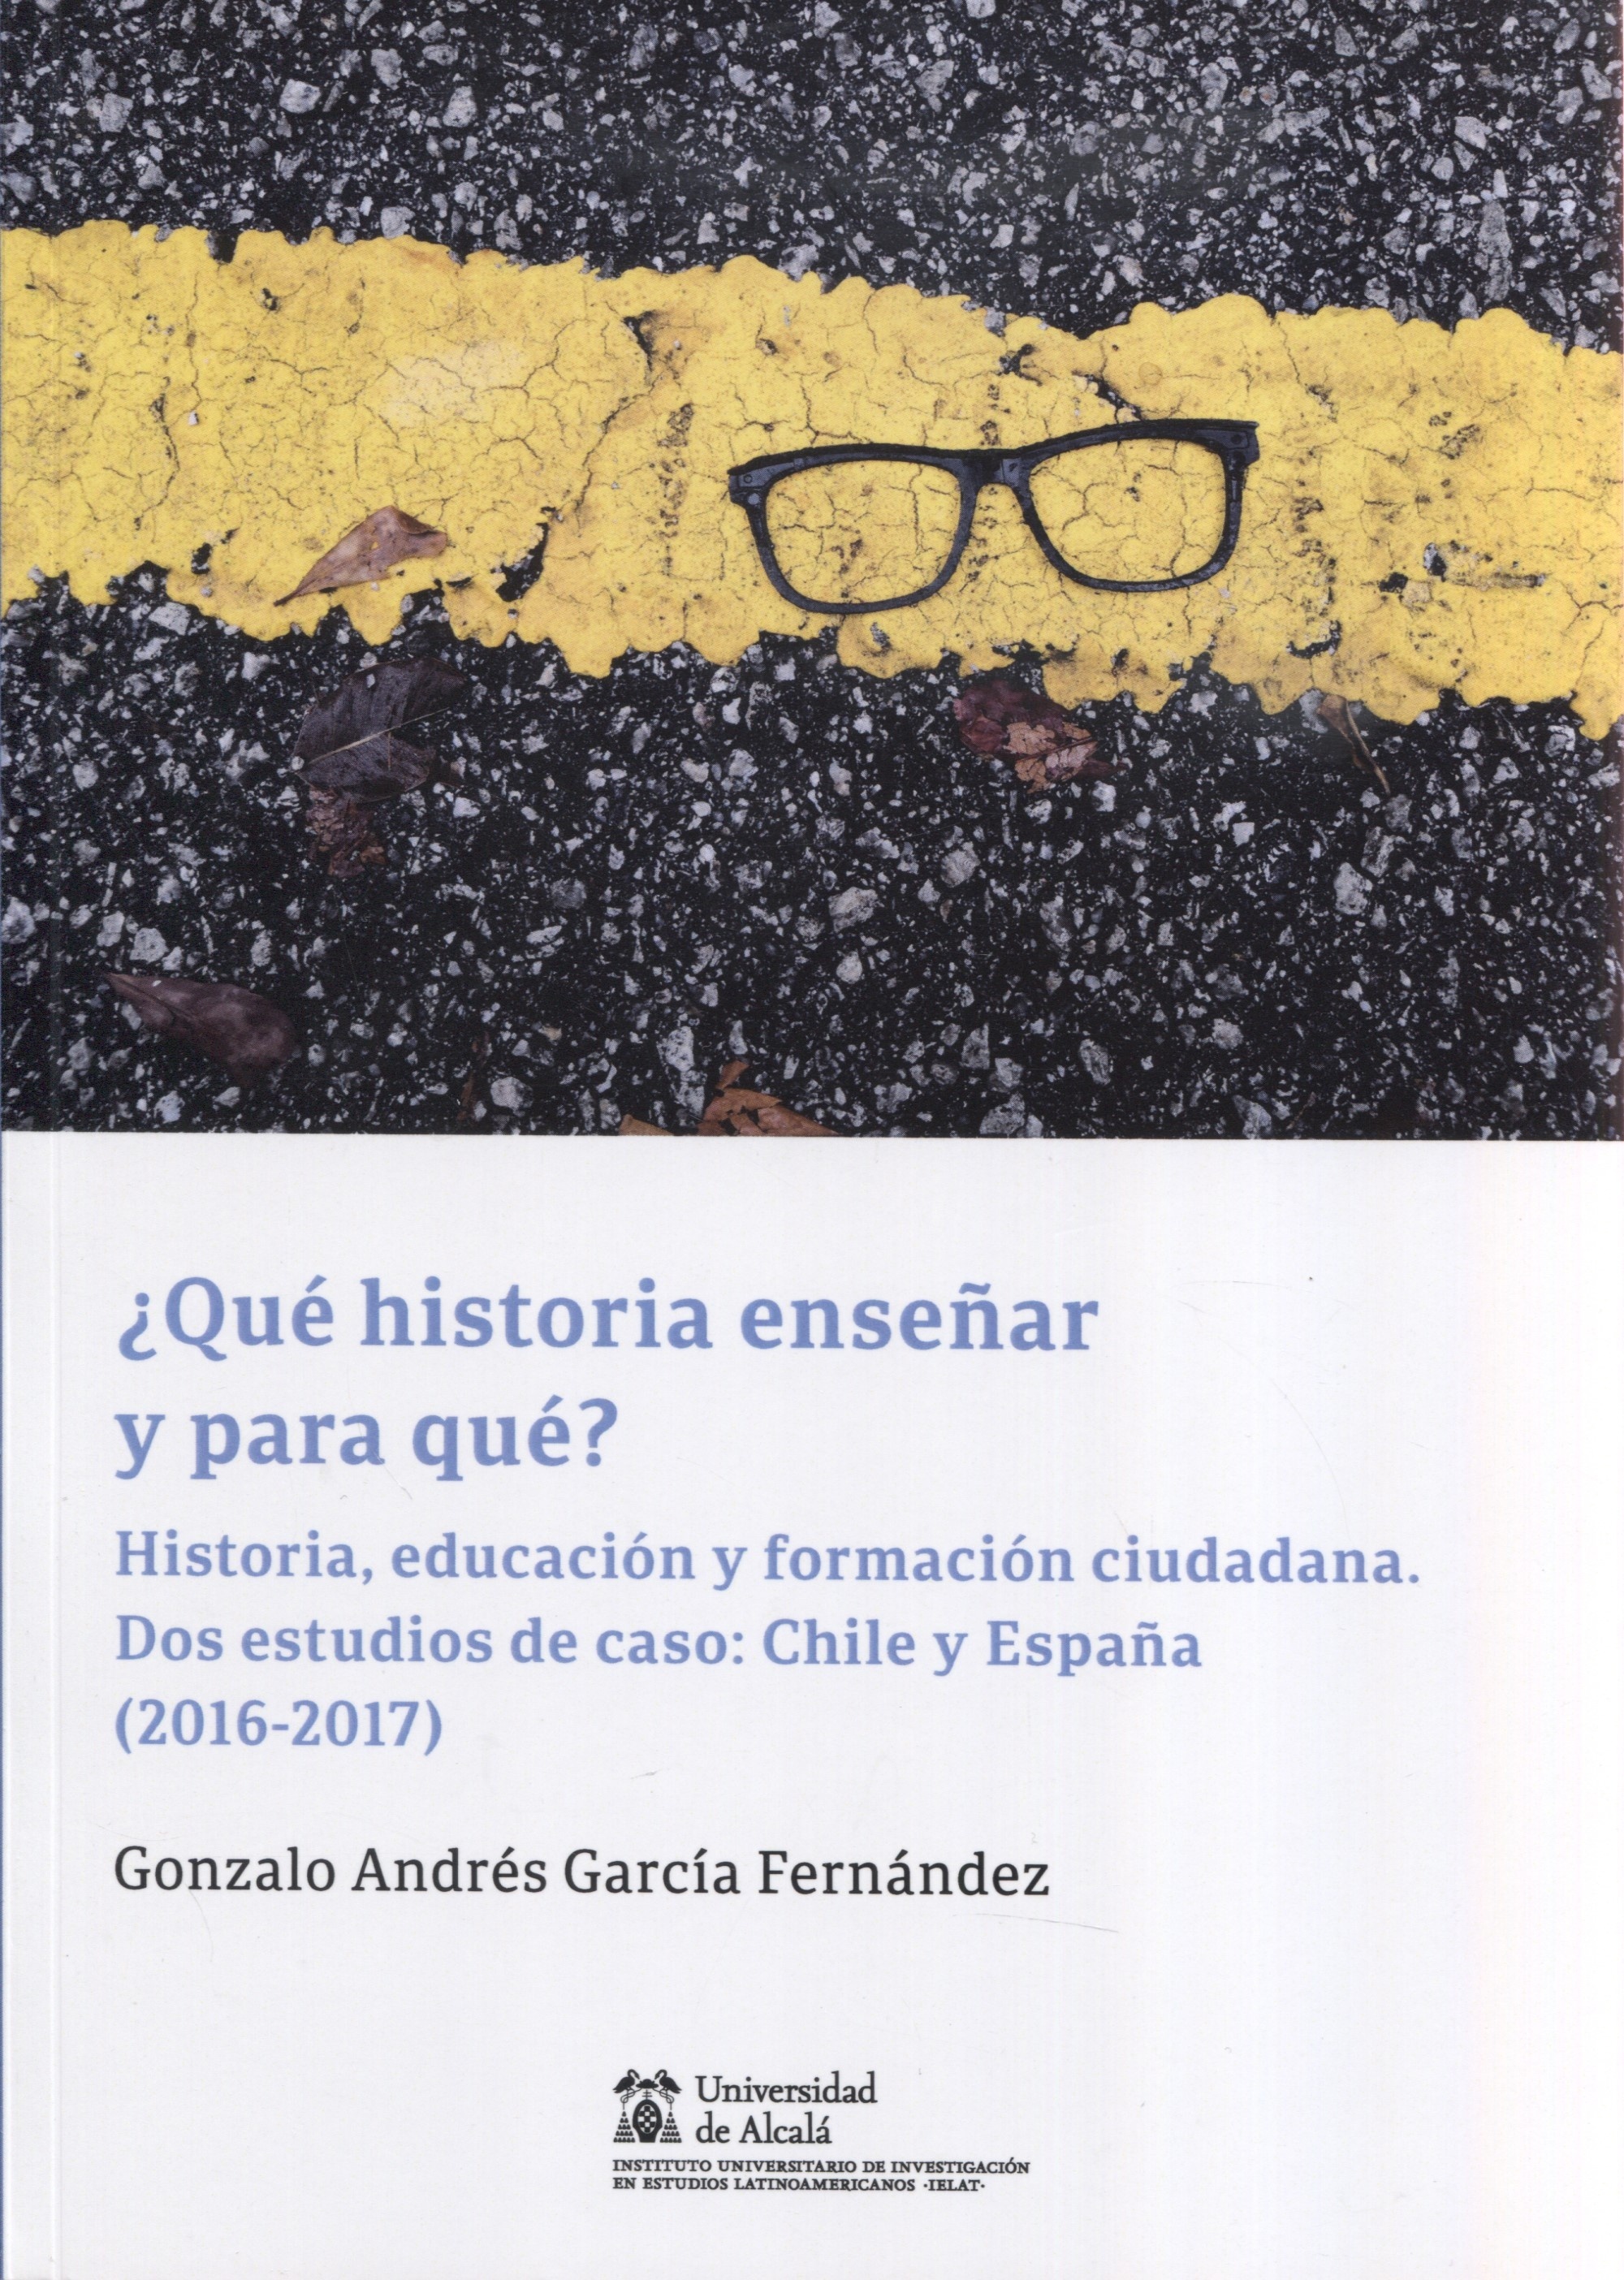 ¿Qué historia enseñar y para qué? "Historia, educación y formación ciudadana. Dos estudios de caso: Chile y España (2016-2017)"